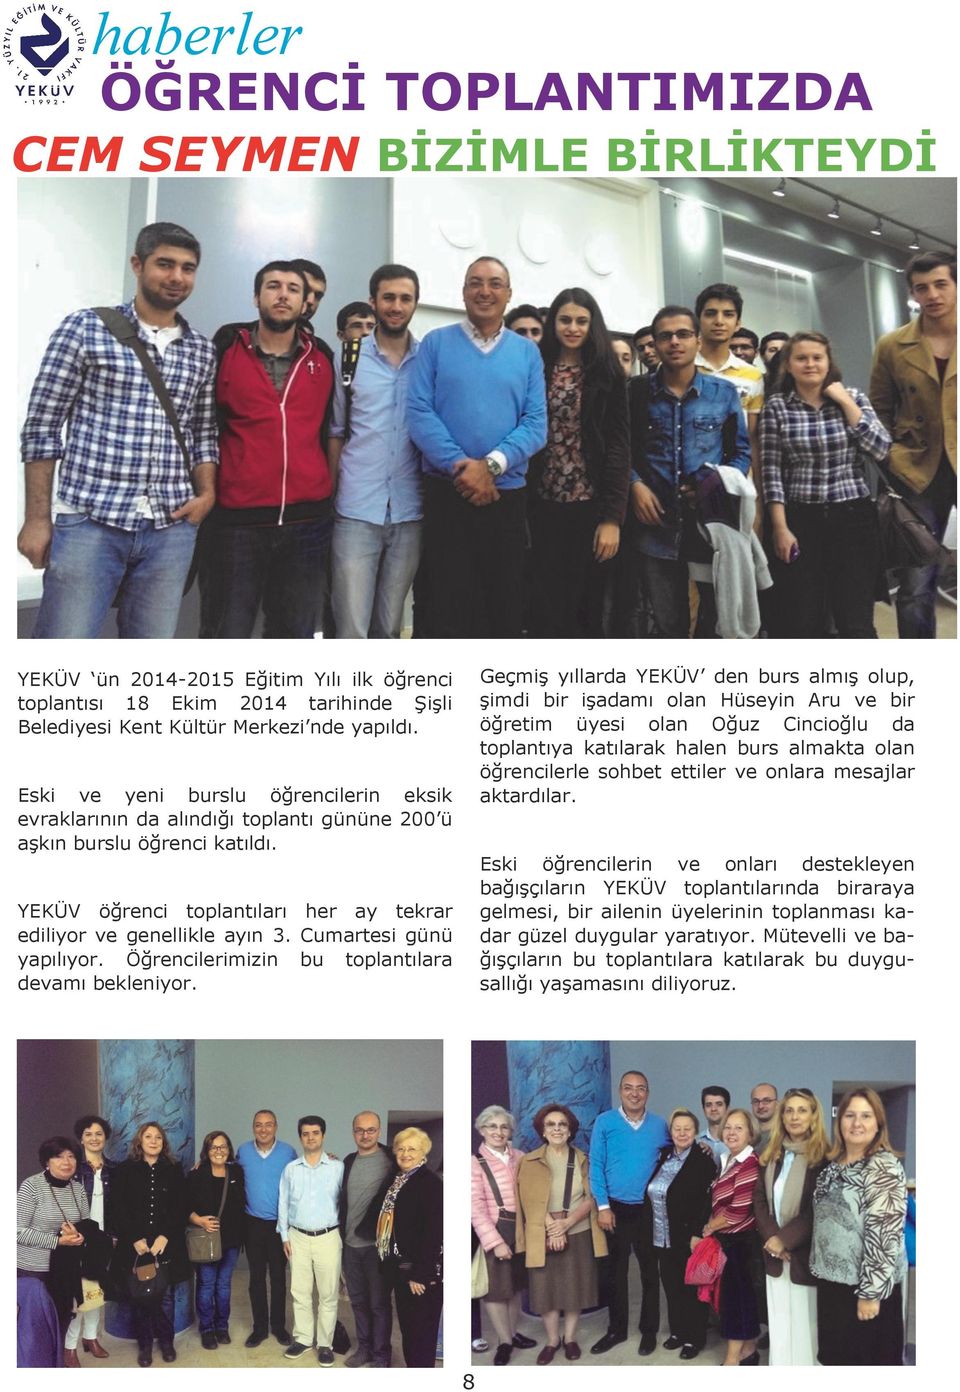 YEKÜV ün 2014-2015 Eğitim Yılı ilk öğrenci toplantısı 18 Ekim 2014 tarihinde Şişli Belediyesi Kent Kültür Merkezi nde yapıldı.